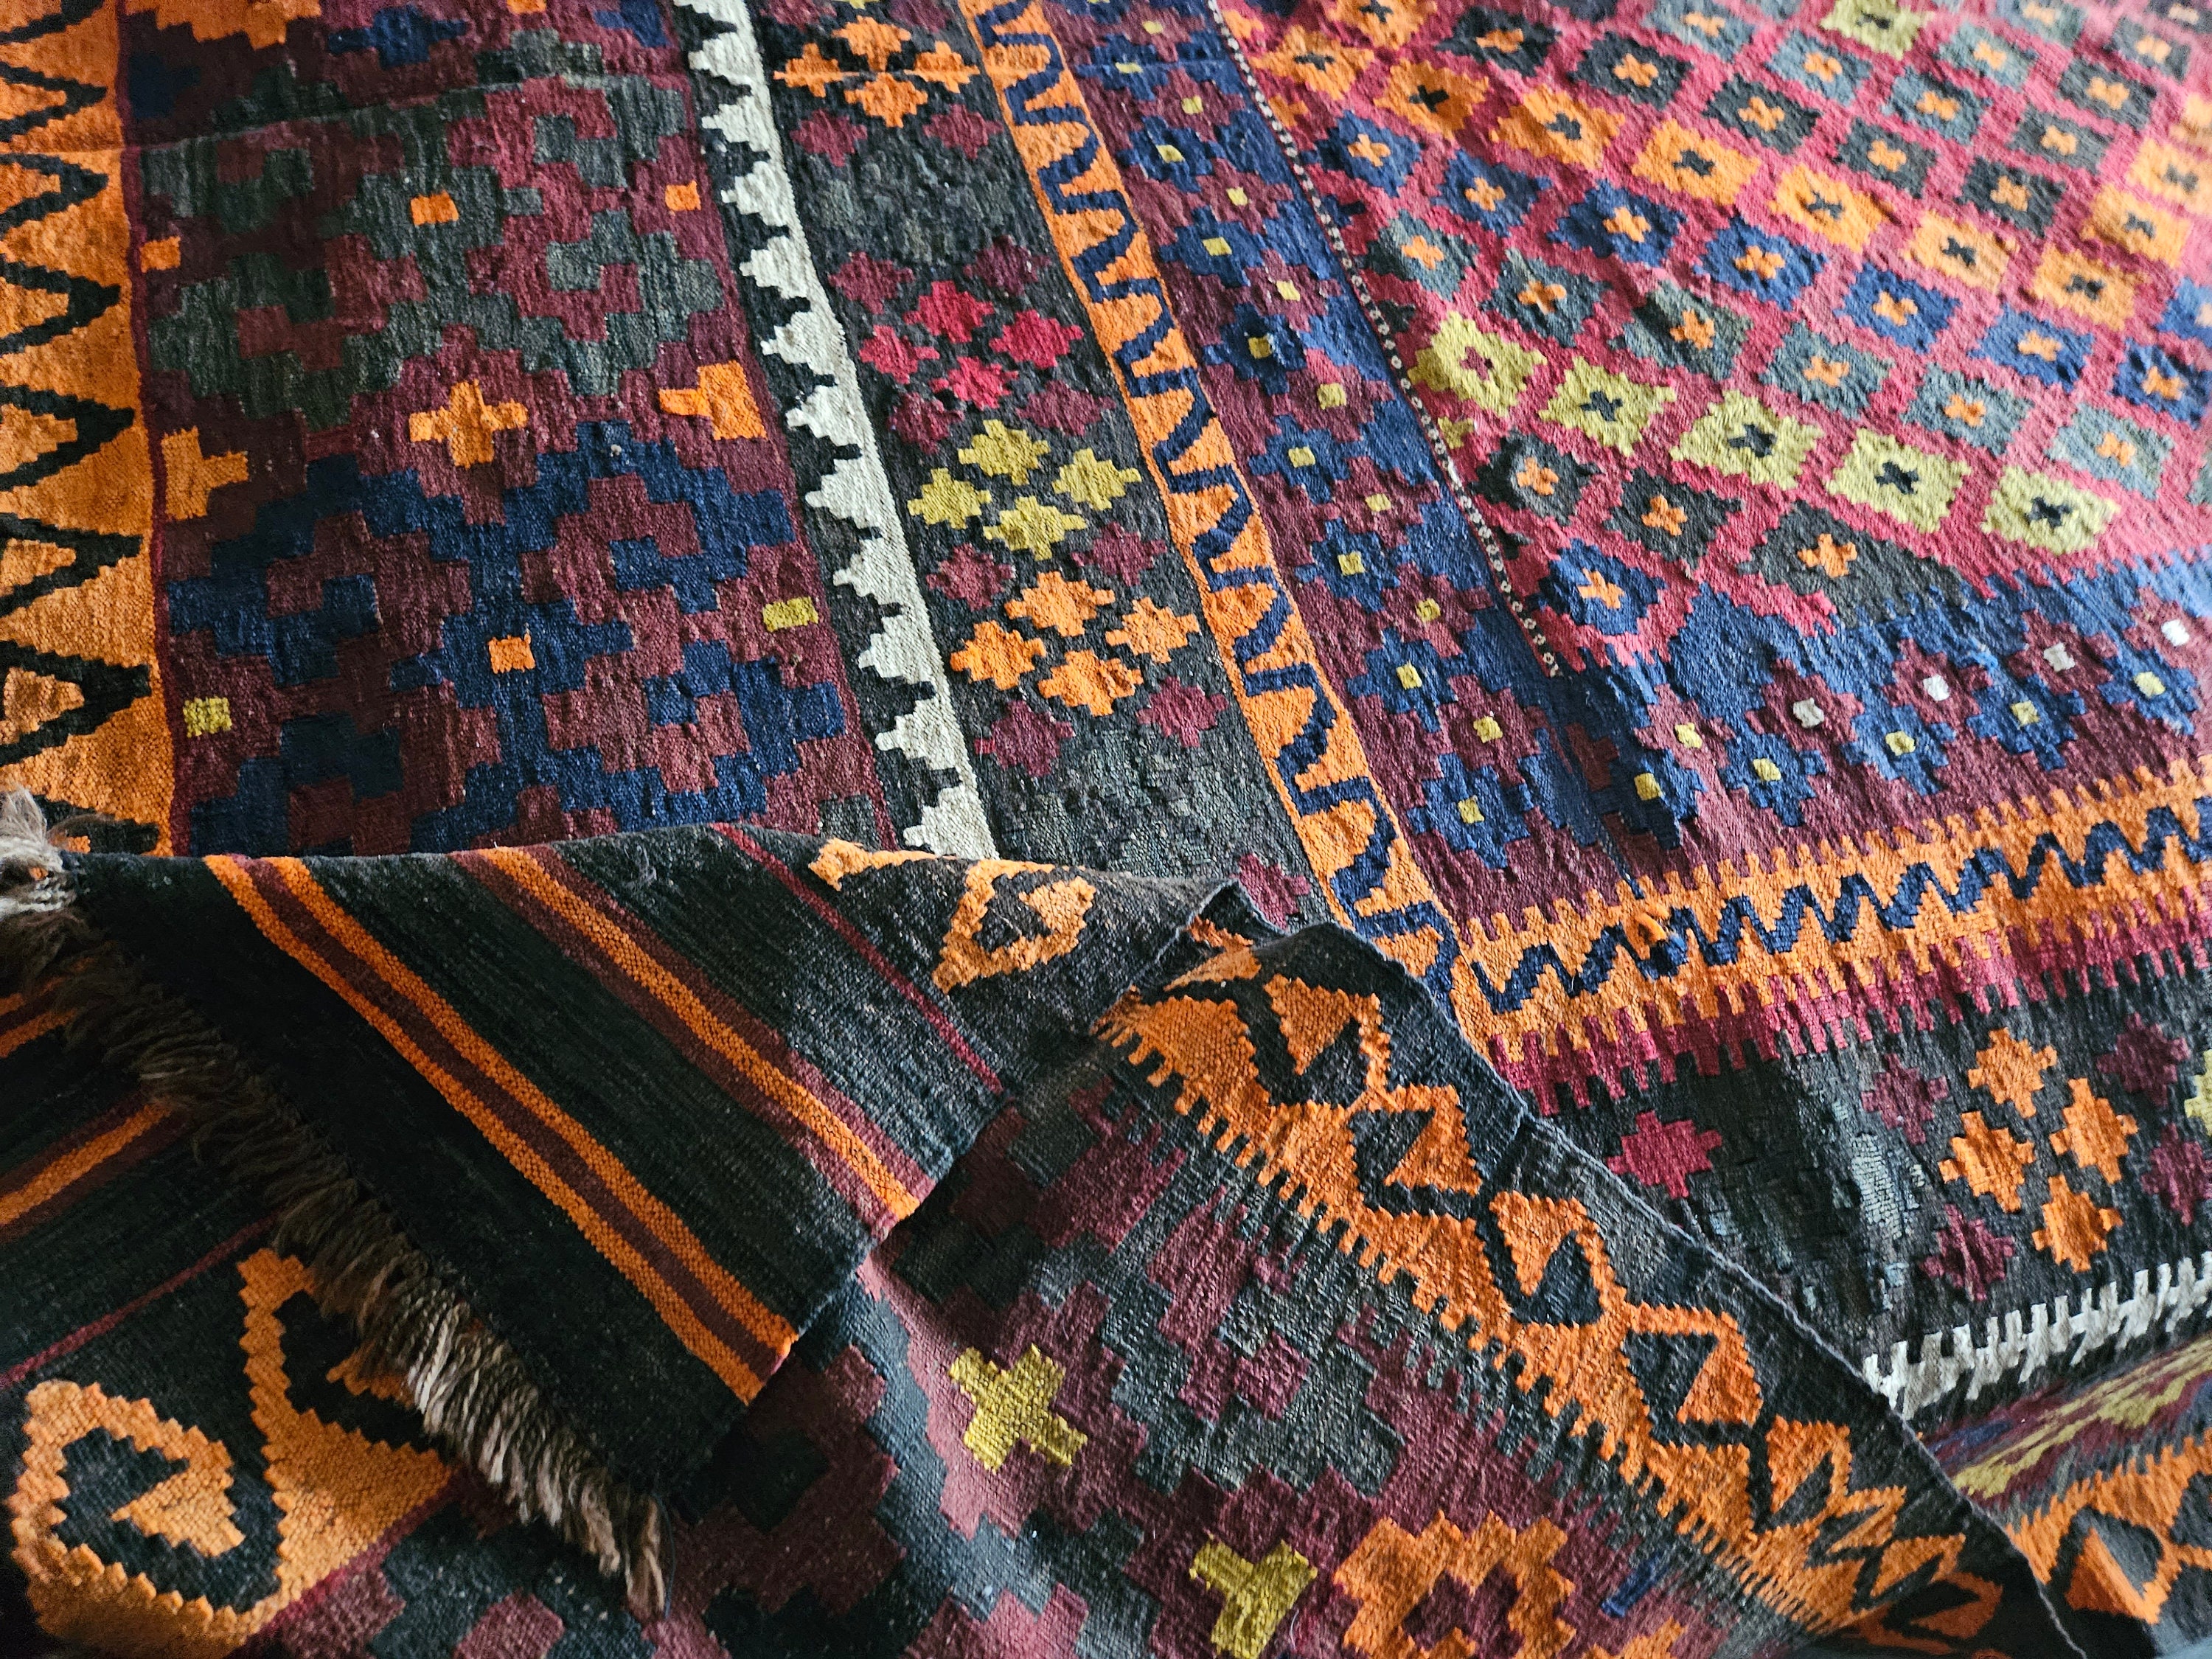 8X12 kilim rug, Orange Handmade kilimrug, sheepskin rug, persian rug, hand made rug, afghan kilimrug, flat voven rug Geometric Afghan kilim